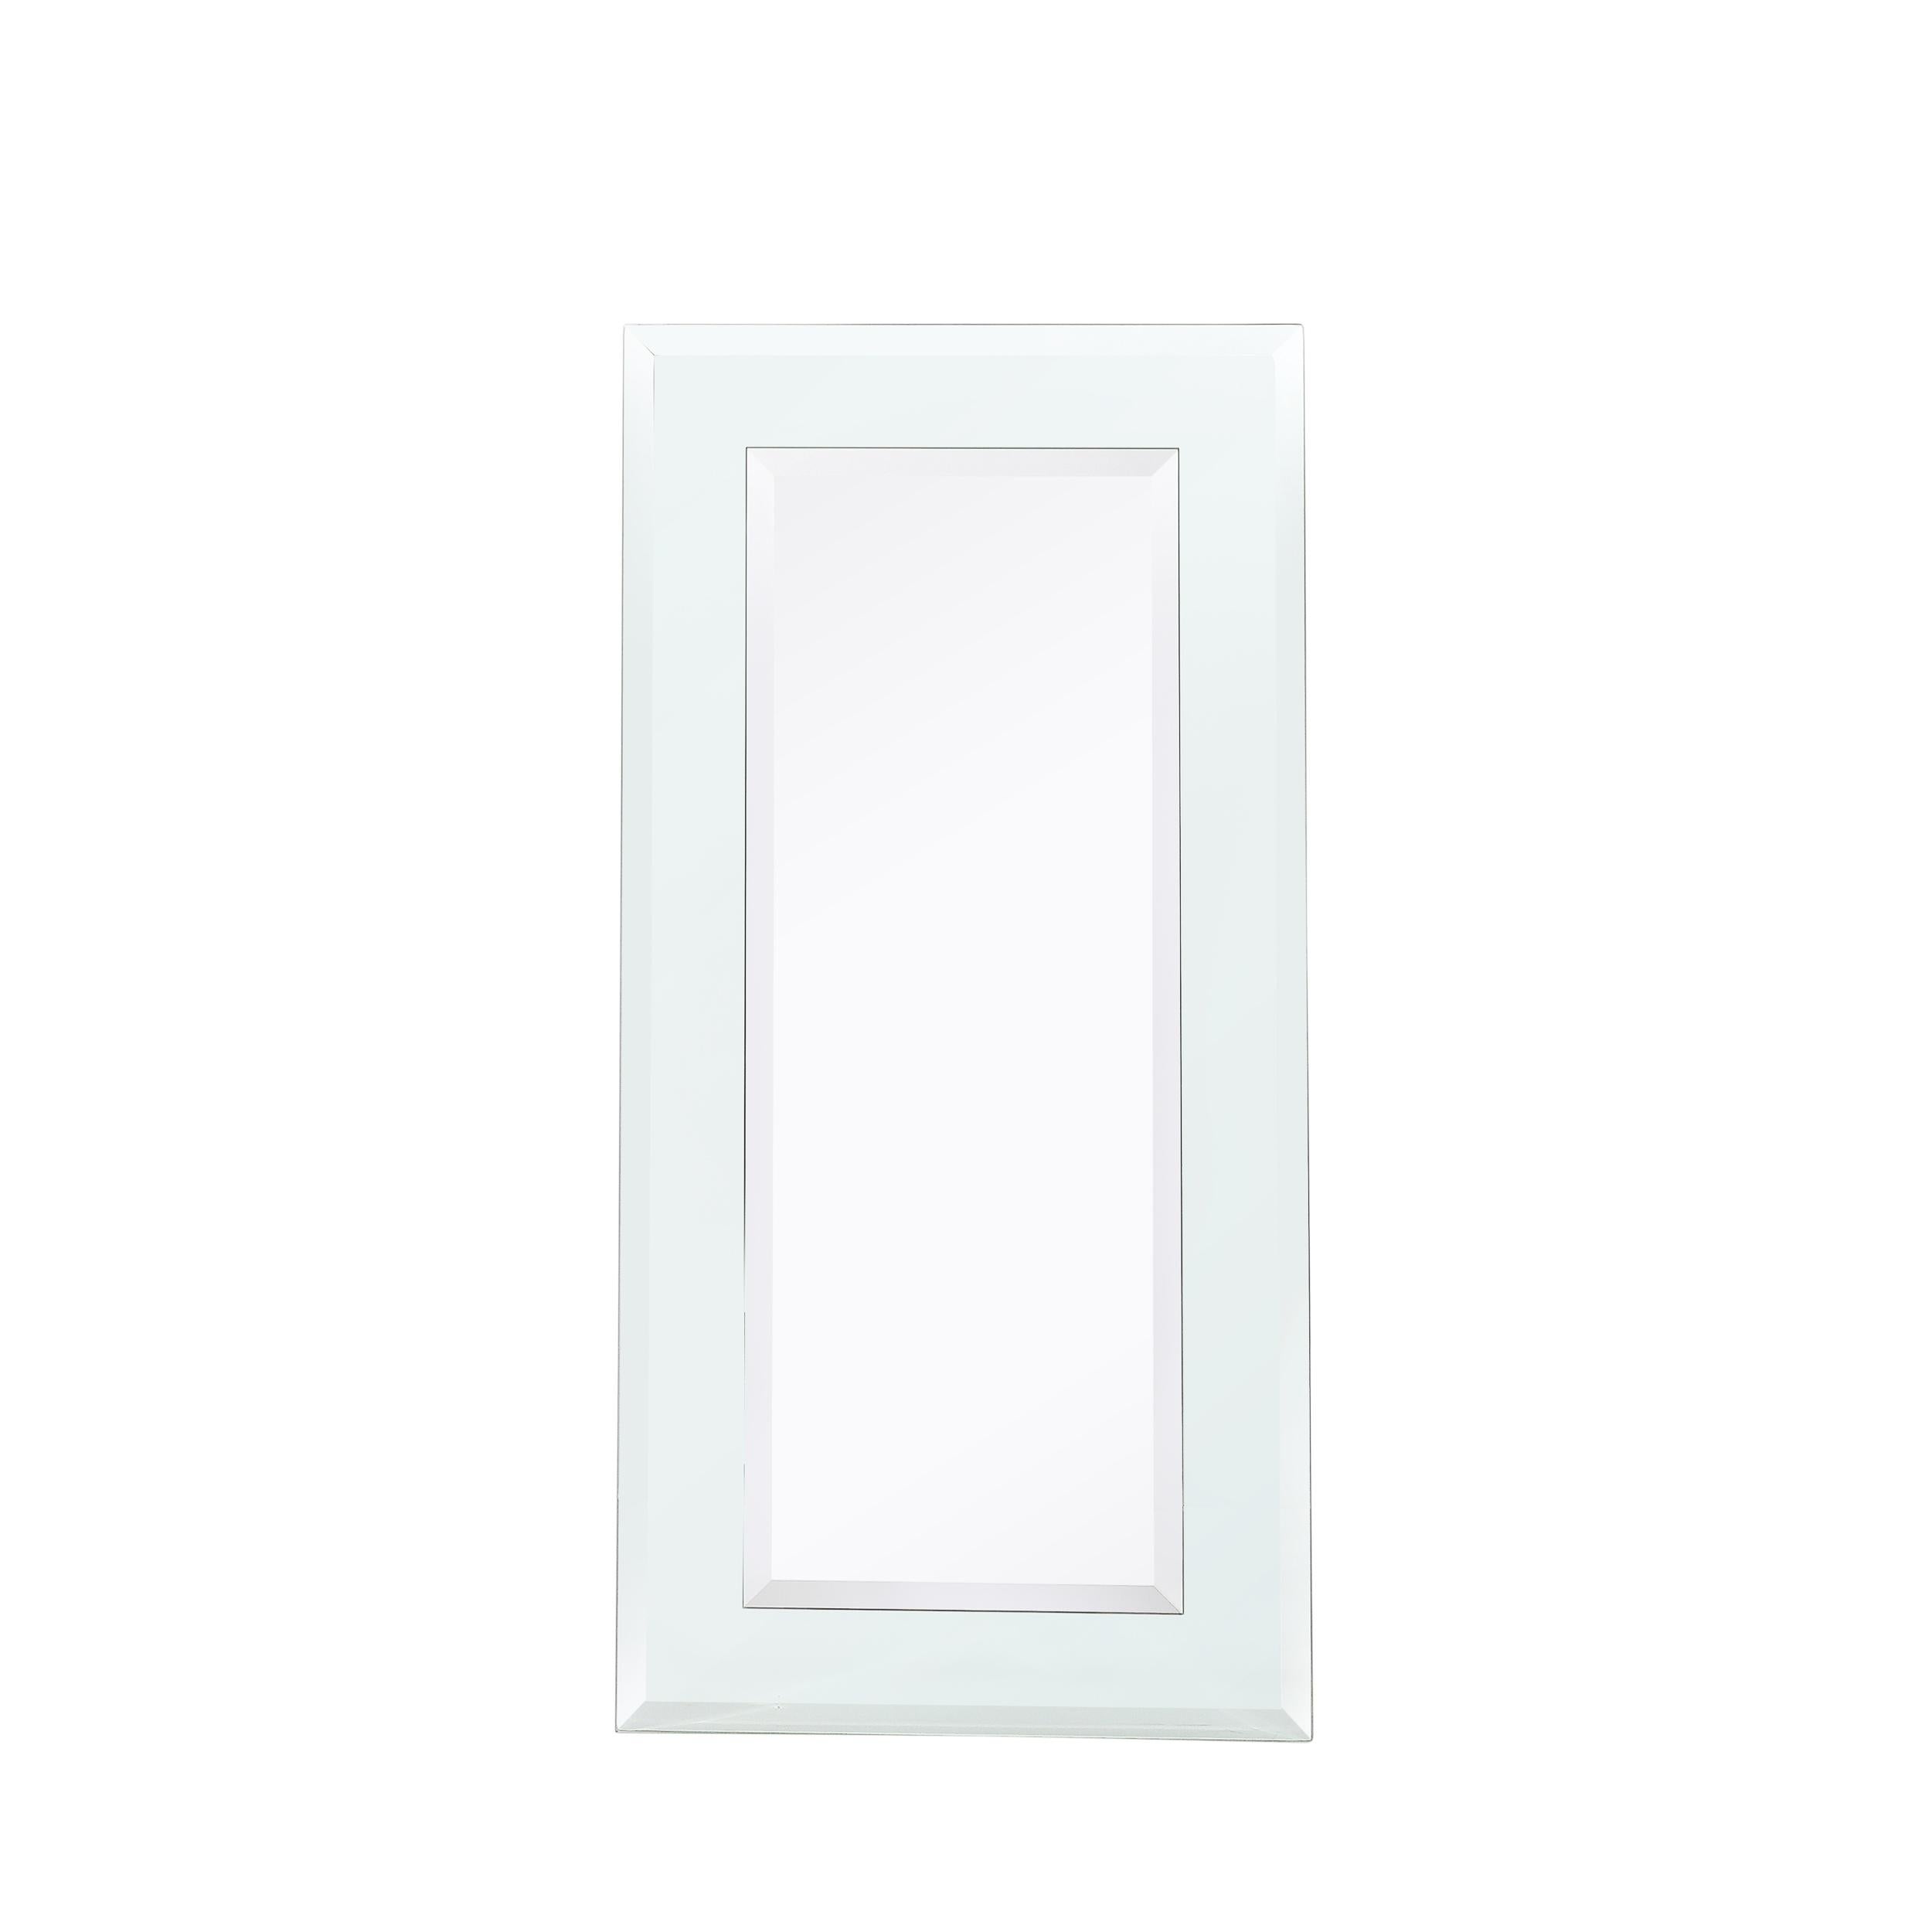 Ce miroir rectangulaire à deux niveaux, minimaliste et magnifiquement fabriqué, provient des États-Unis au cours du 21e siècle. Présente un profil rectangulaire vertical composé de deux niveaux de miroir biseauté, hautement réfléchissant, avec de